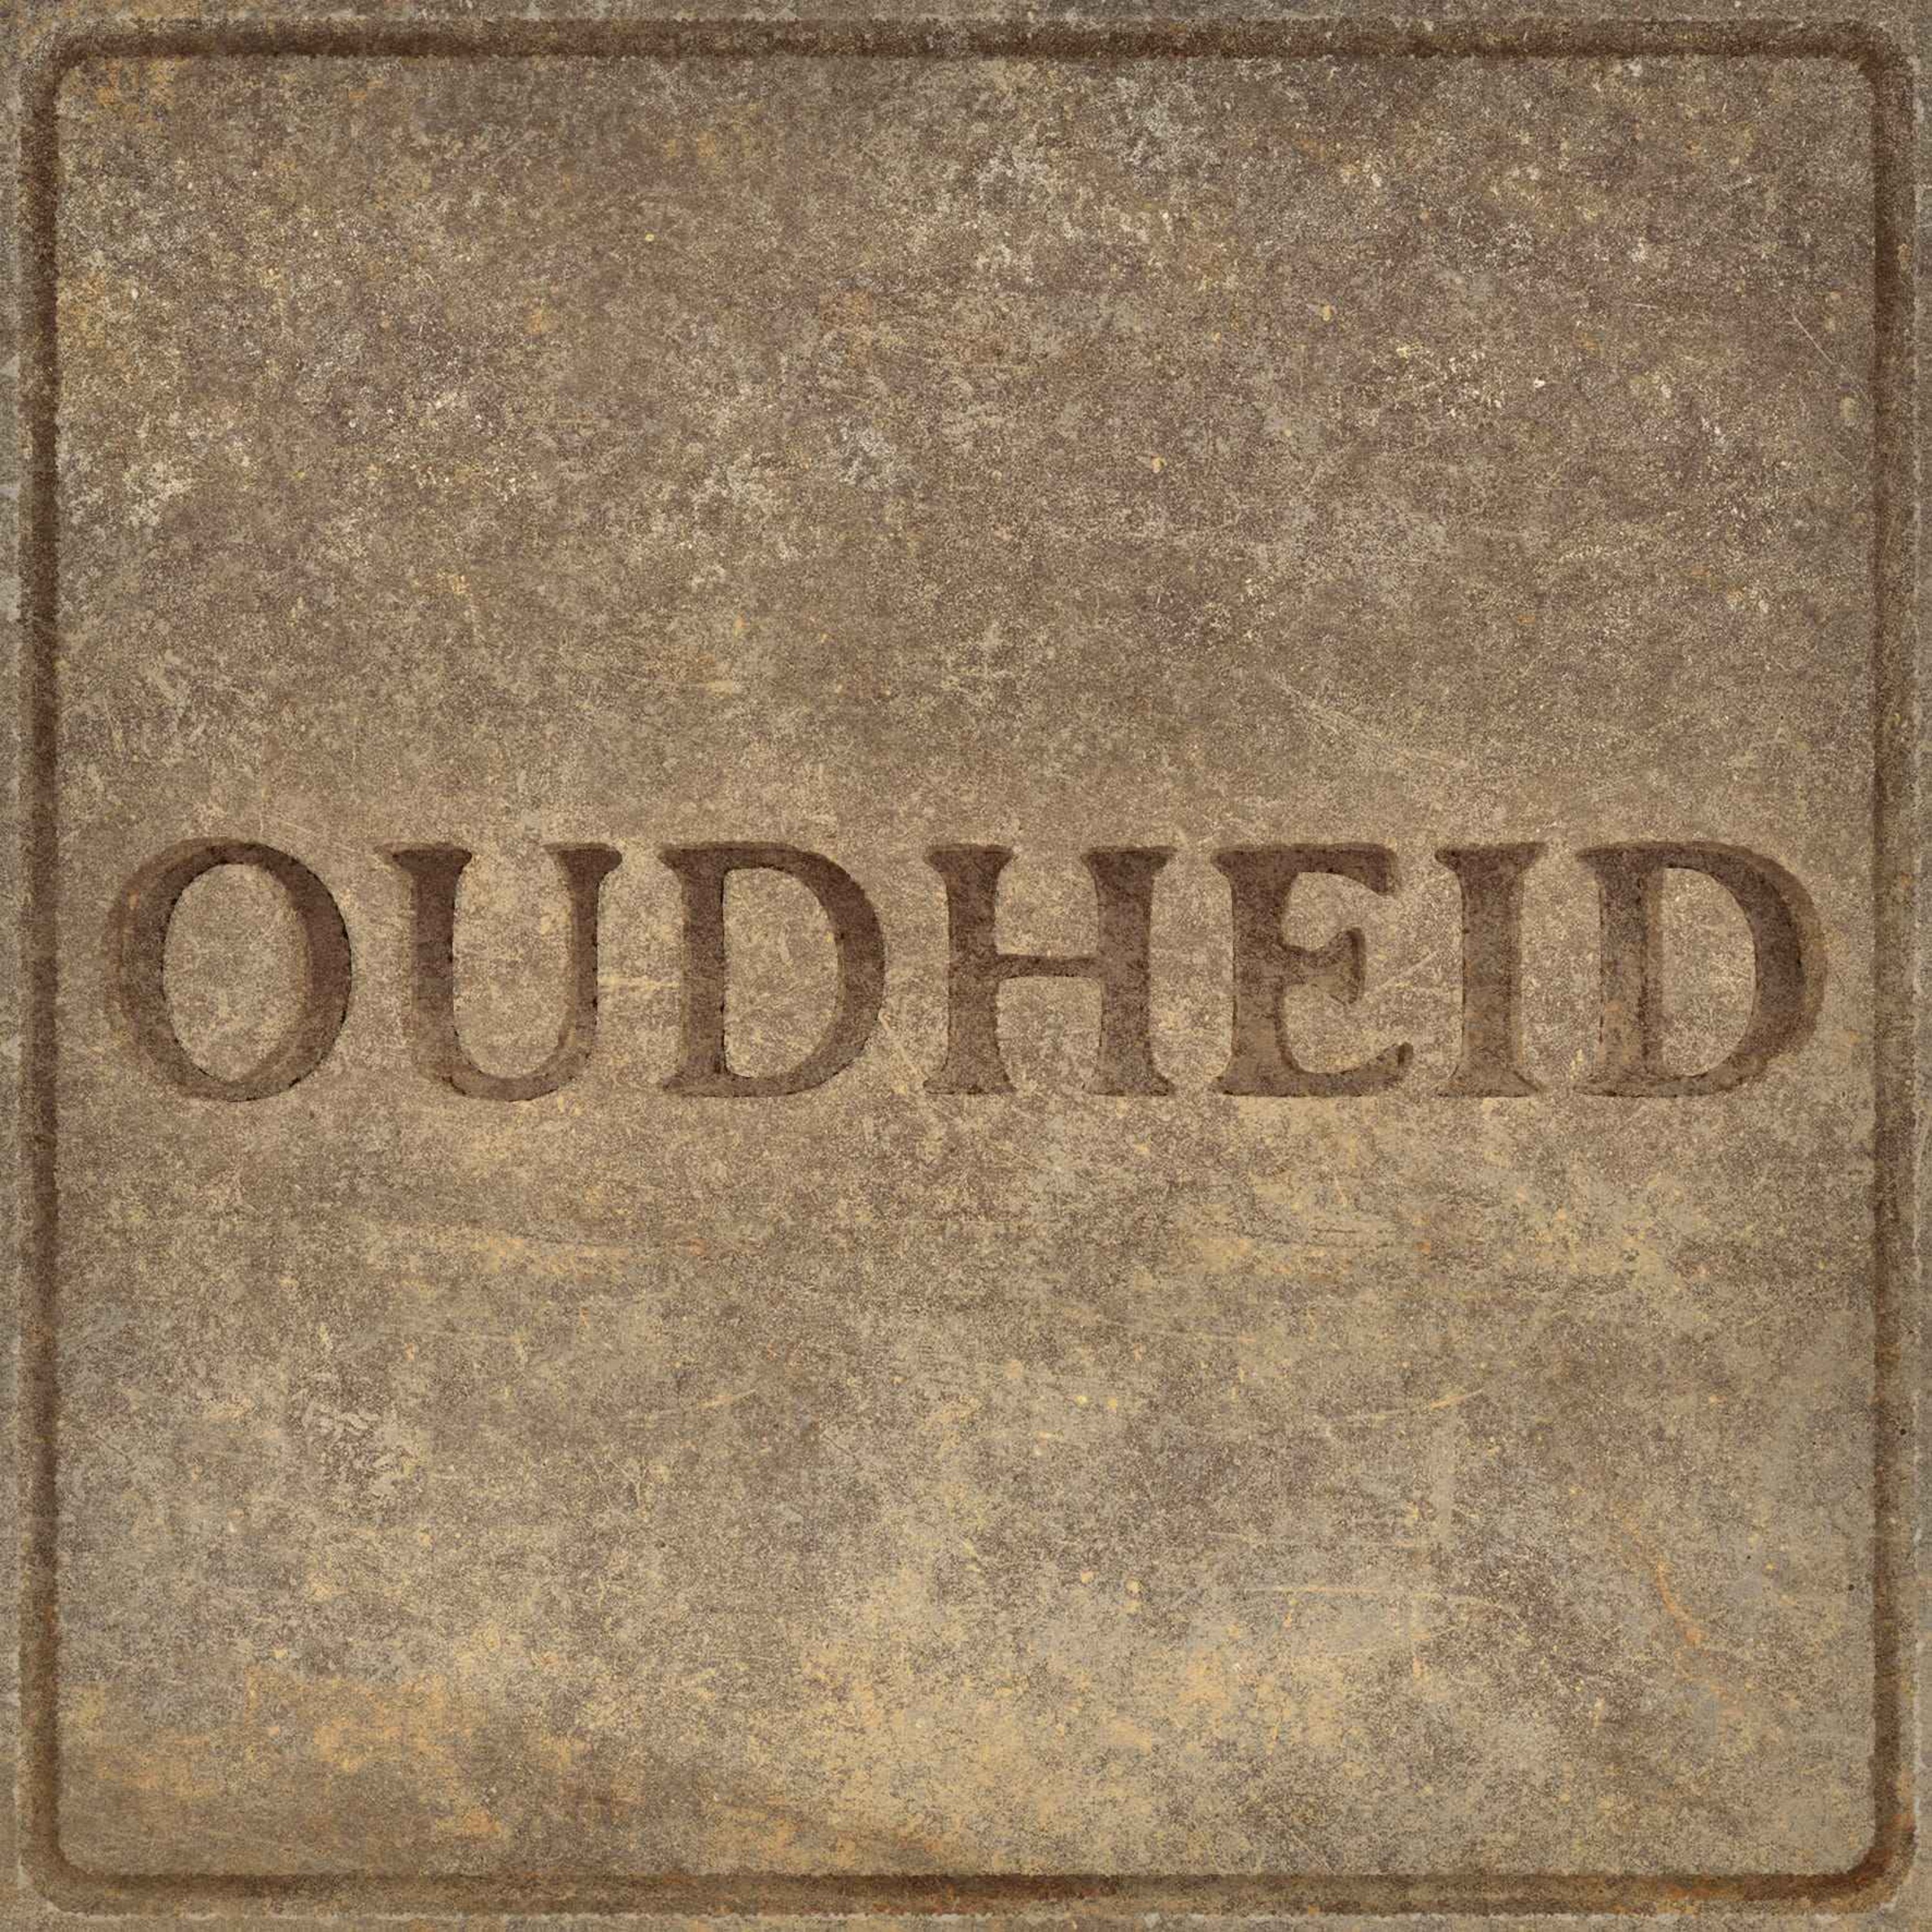 cover art for Oudheid - Podcast over het verre verleden